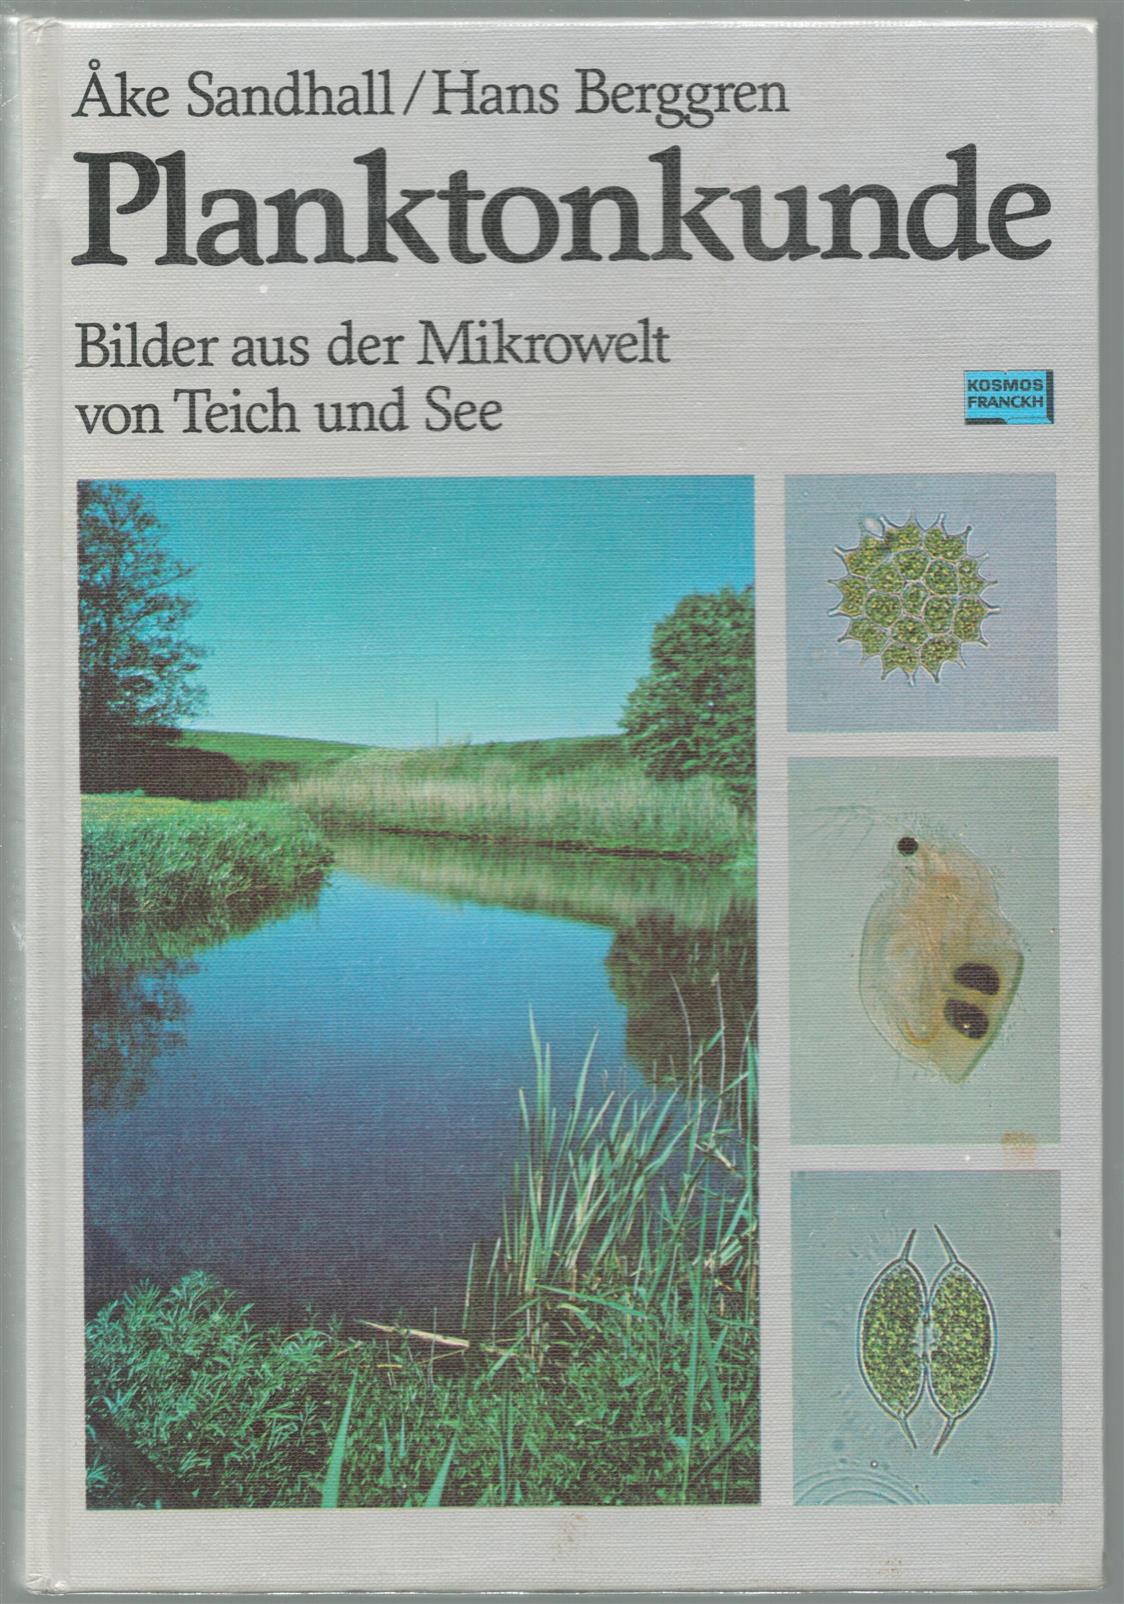 Hans Berggren - Planktonkunde: Bilder aus der Mikrowelt von Teich und See.